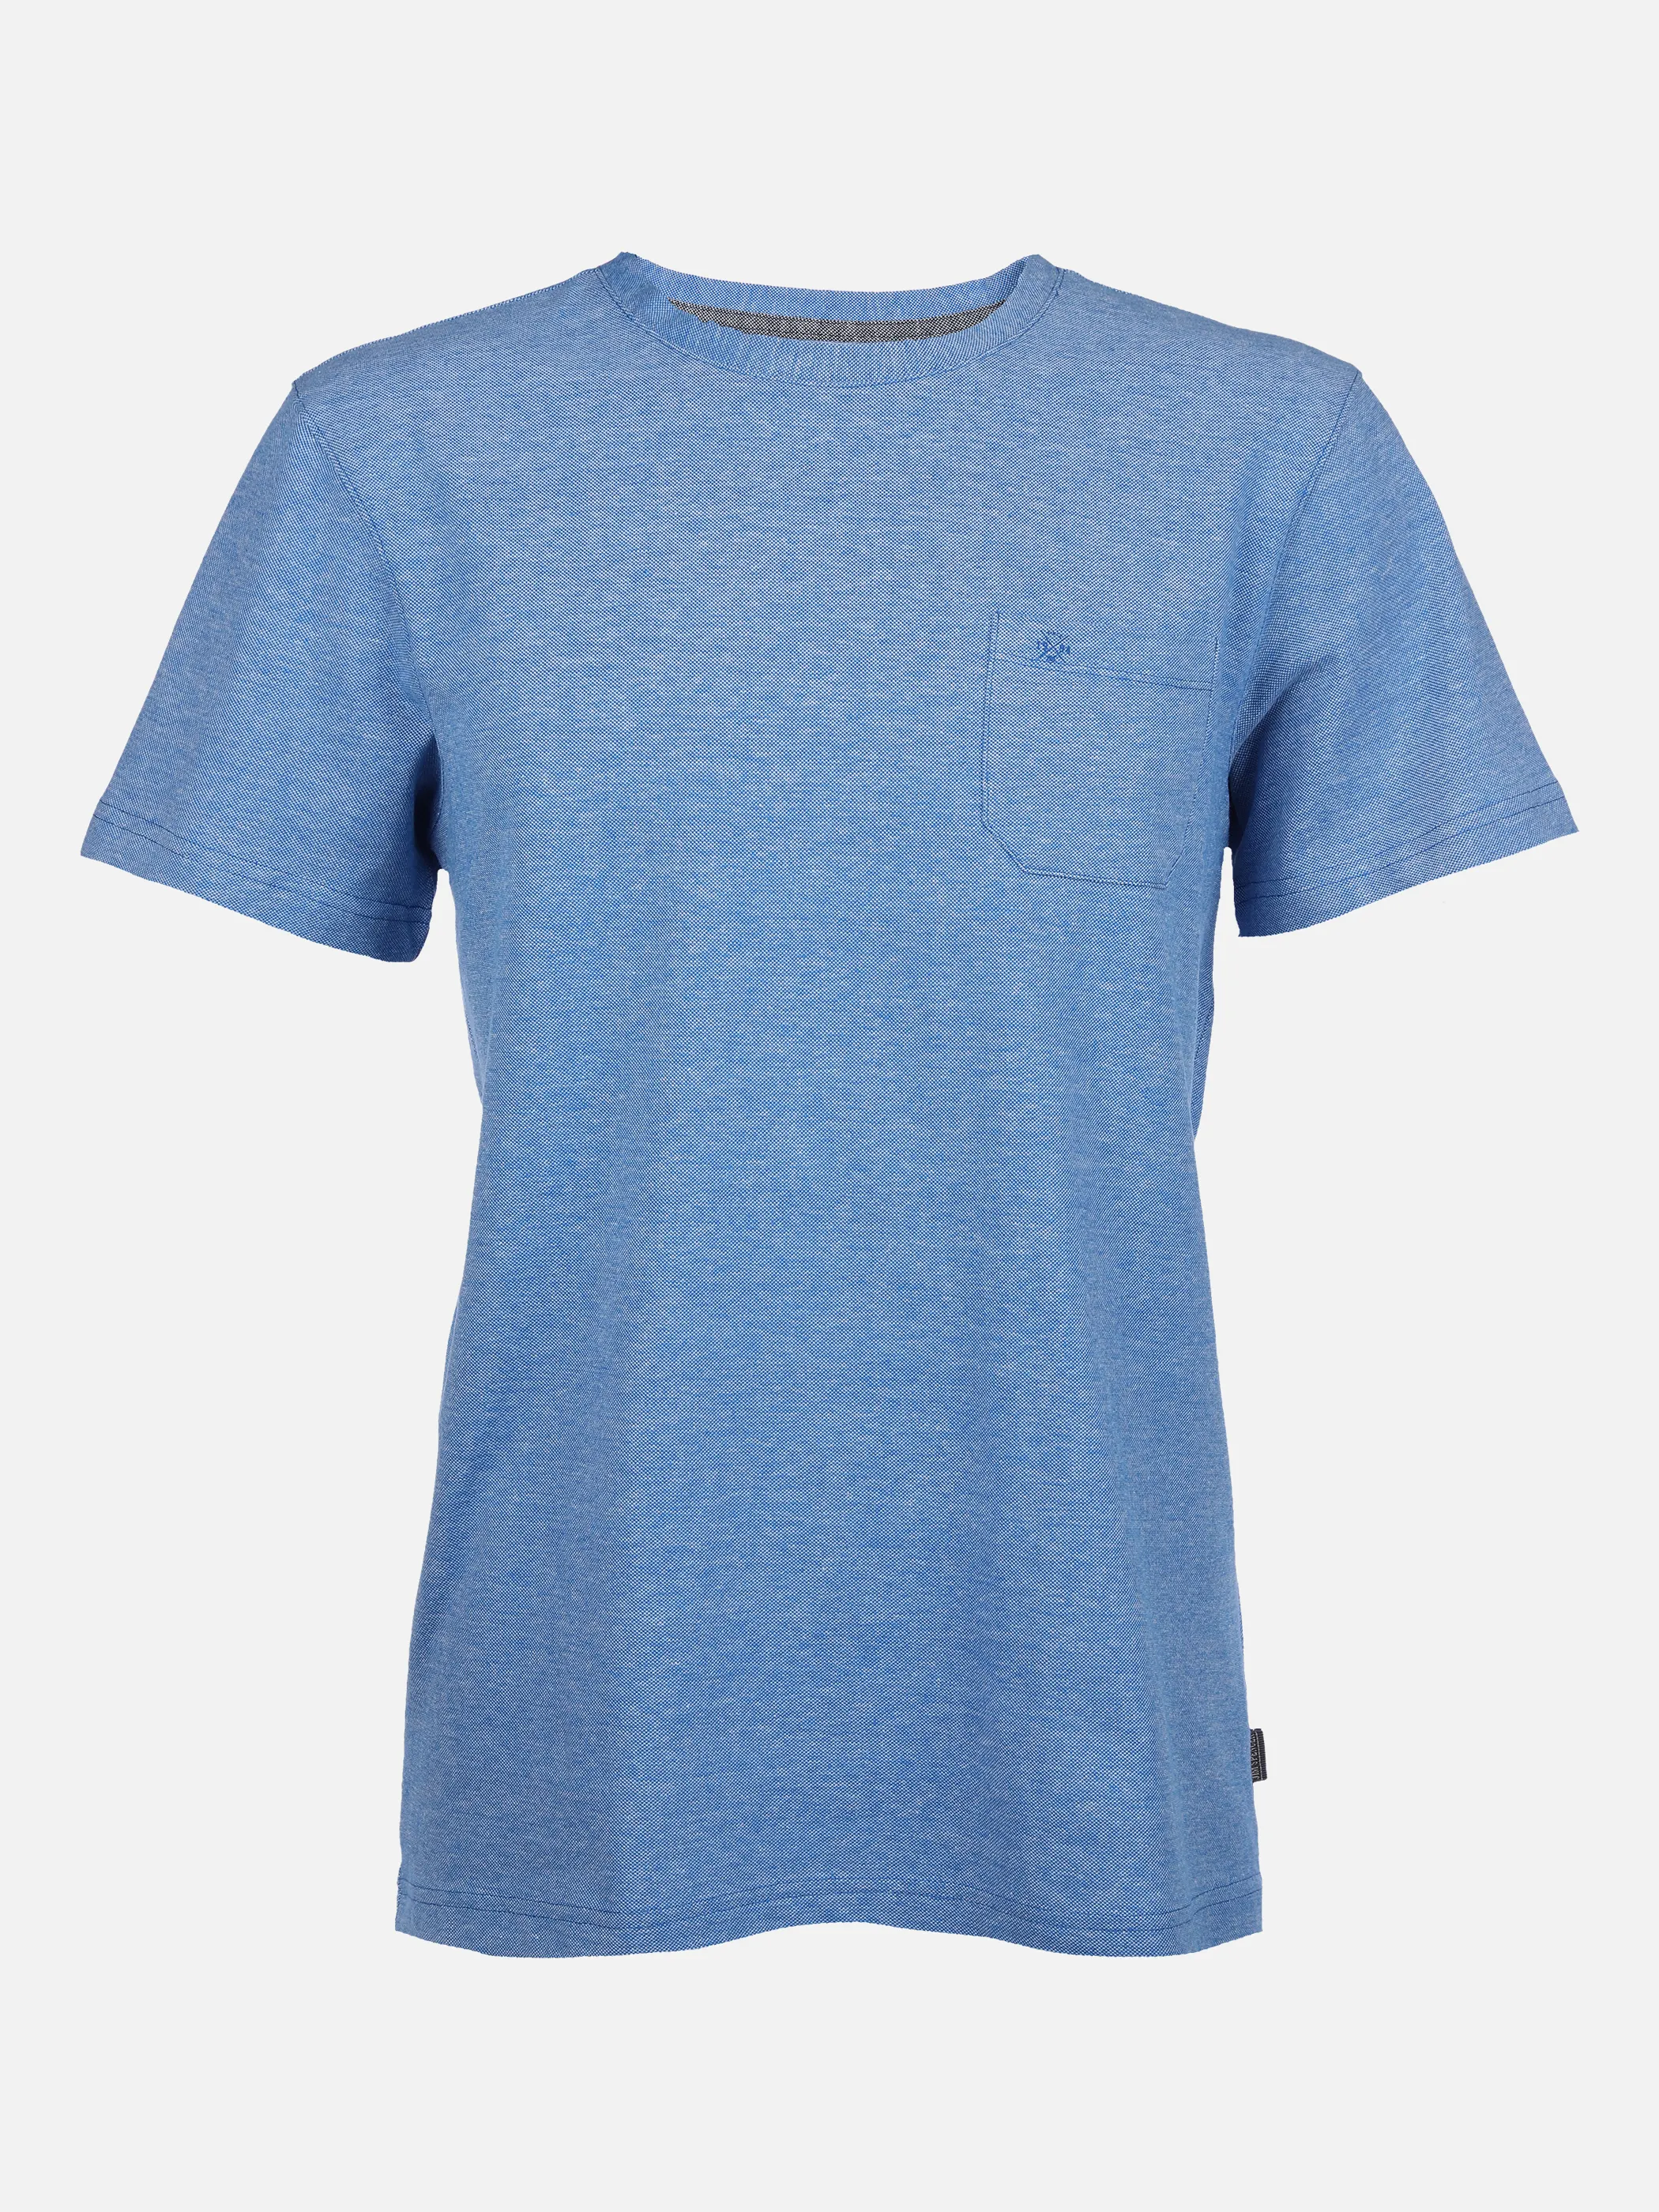 Jim Spencer He. T-Shirt 1/2 Arm pique Blau 862097 BLUE MEL 1